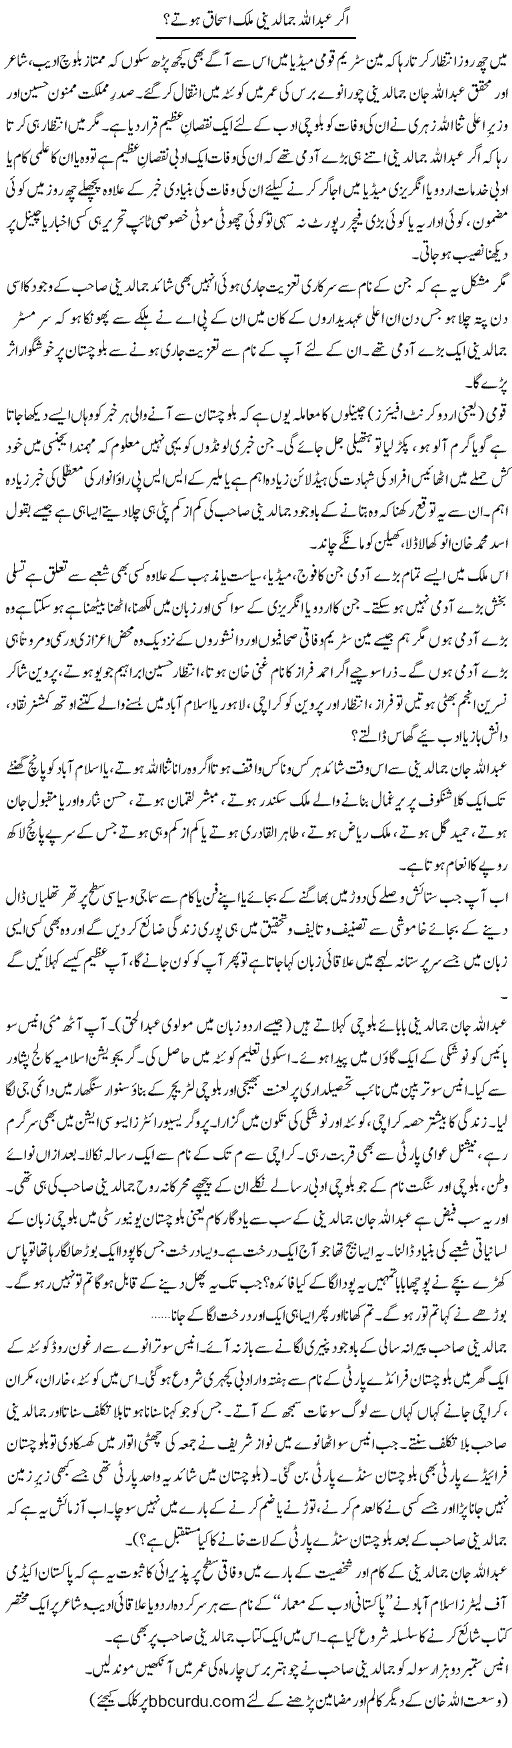 Ager Abdullah Jamaldini Malik Ishaq Hotay? | Wusat Ullah Khan | Daily Urdu Columns